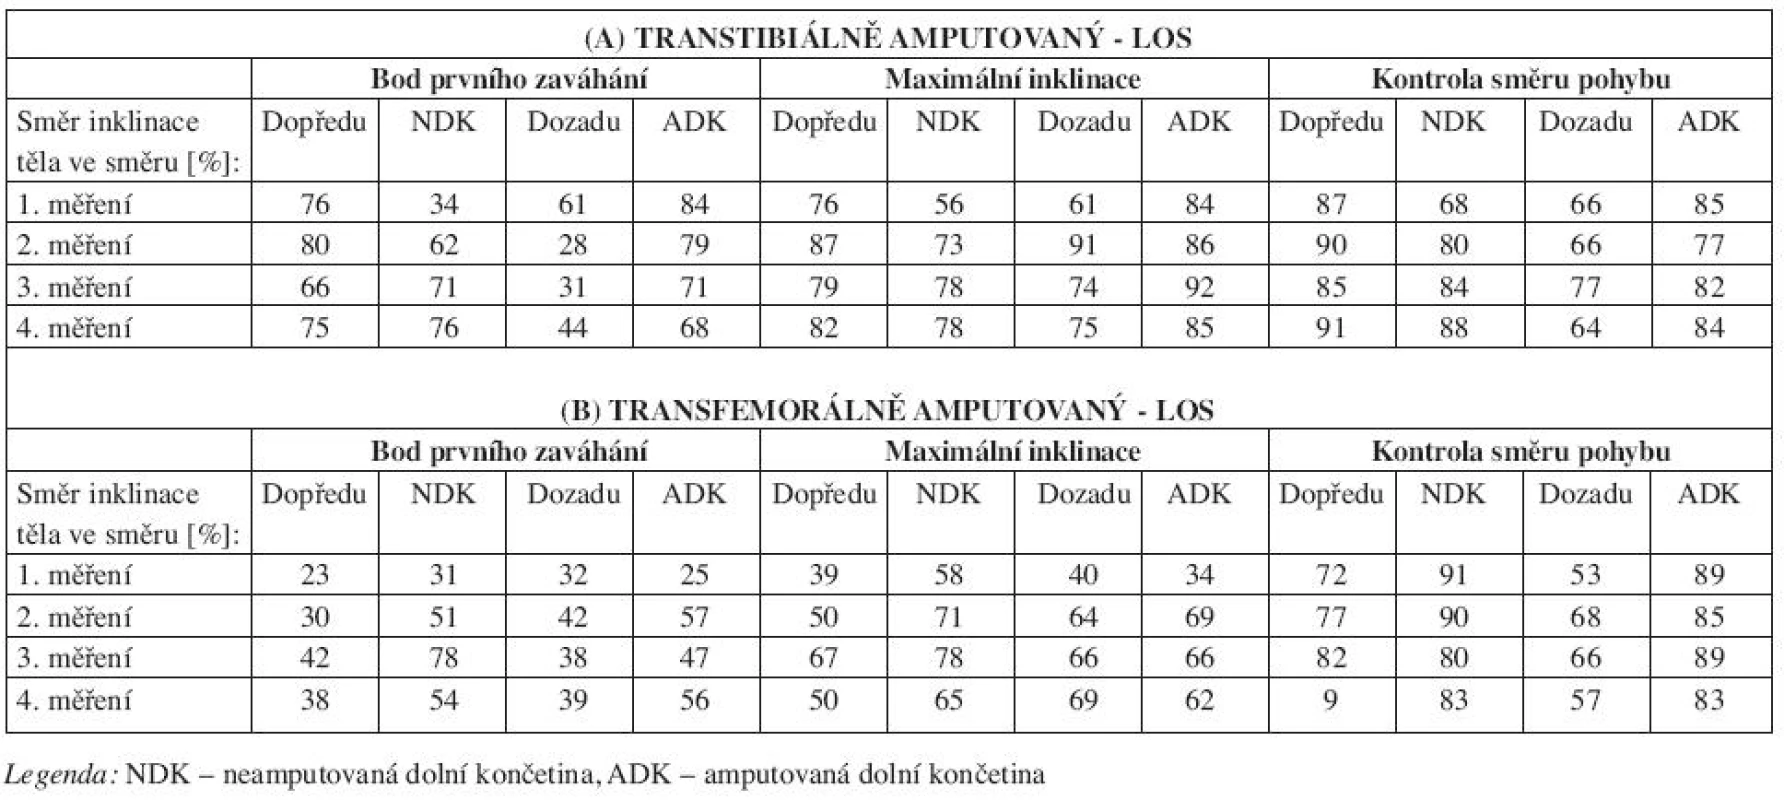 Výsledné hodnoty testu LOS pro jednotlivé parametry u A) transtibiálně amputovaného, B) transfemorálně amputovaného.